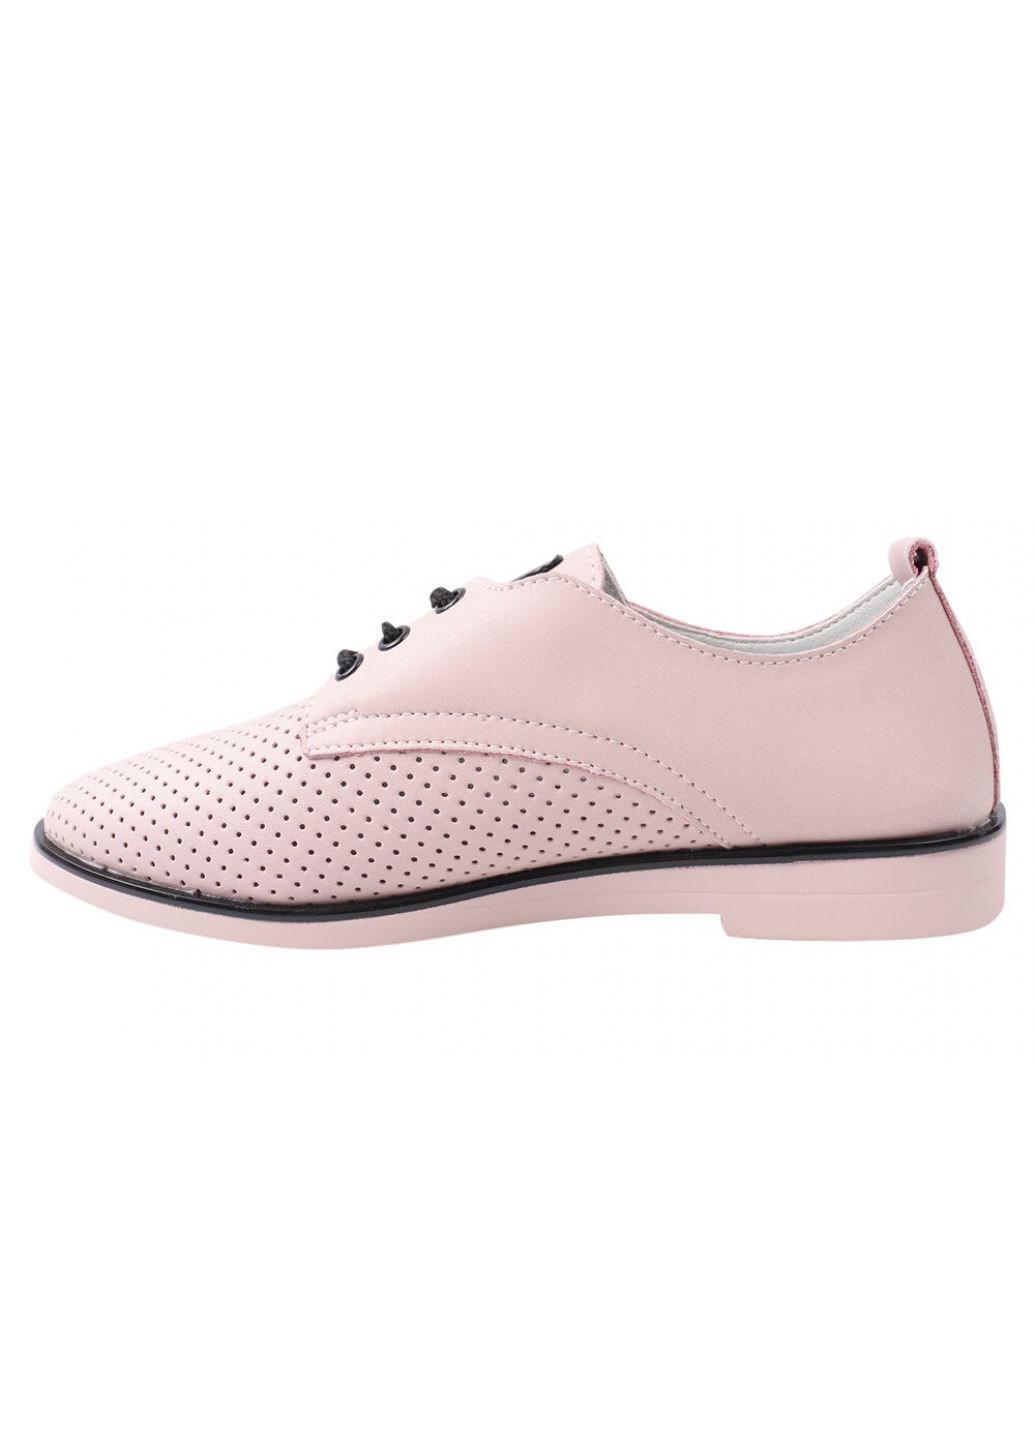 Туфли женские из натуральной кожи, на низком ходу, на шнуровке, цвет розовый, Lifexpert